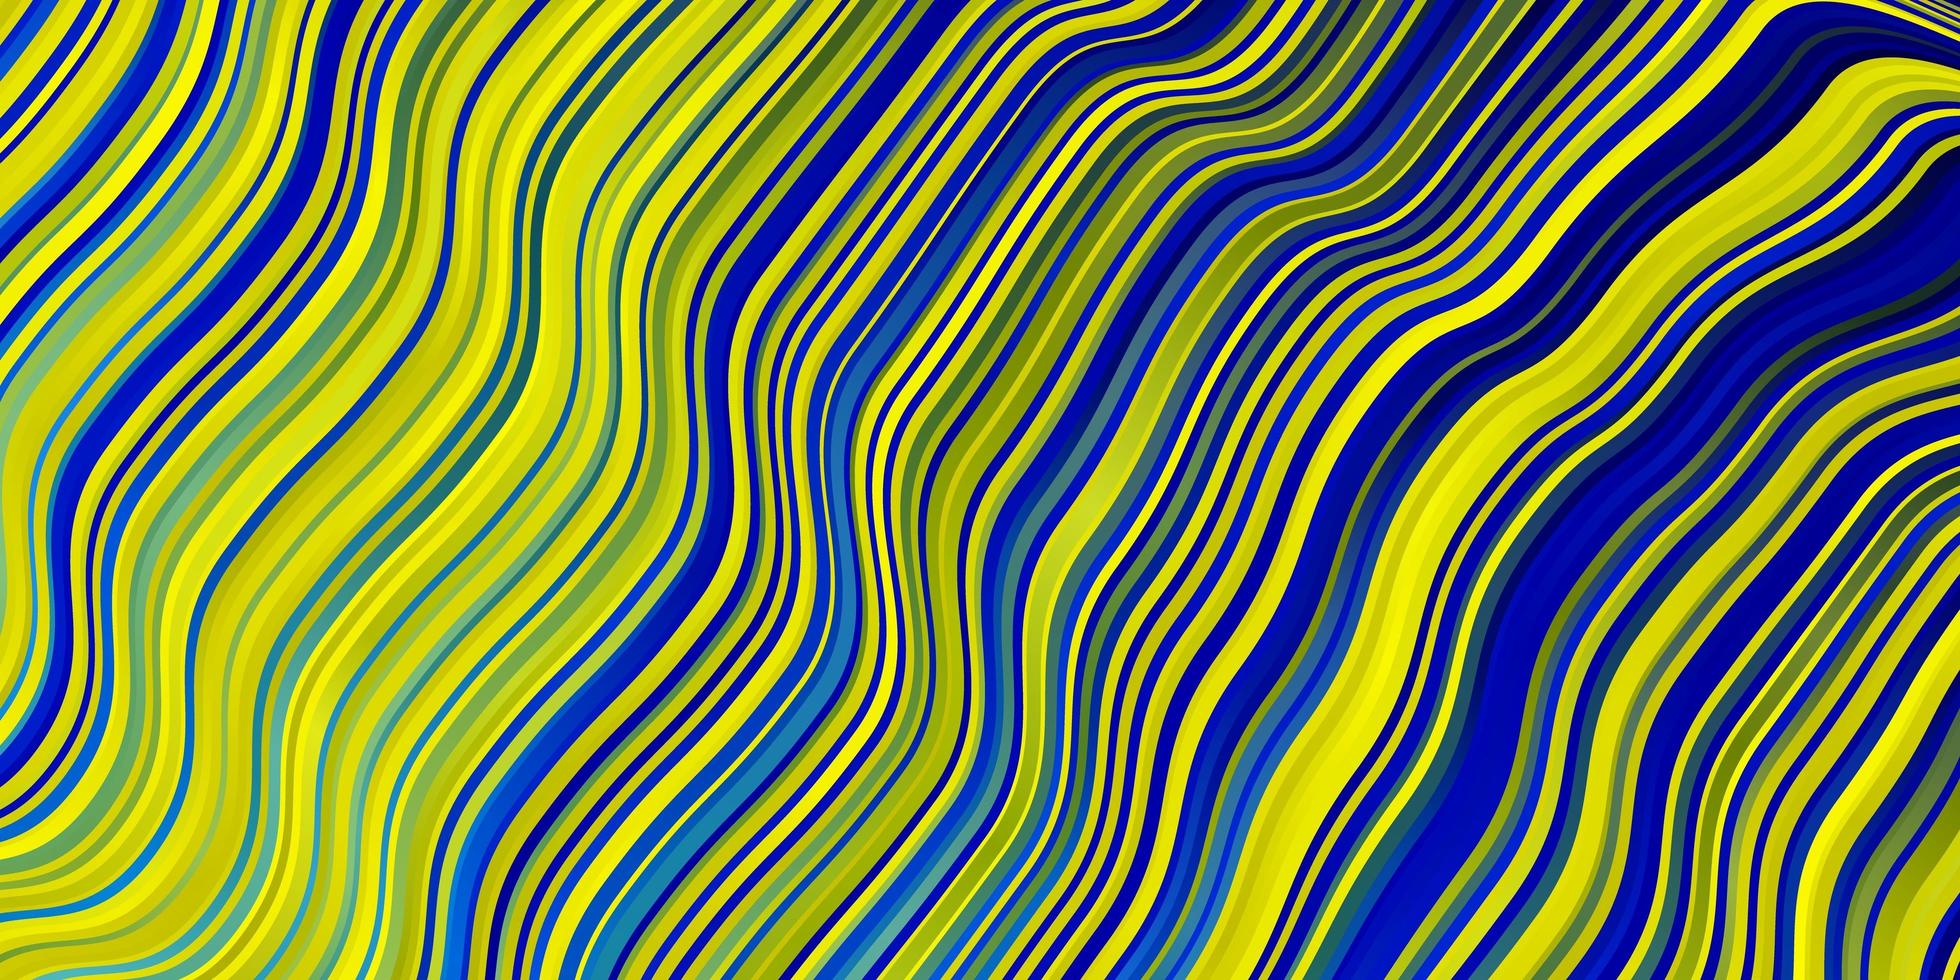 Fondo de vector azul claro, amarillo con líneas.